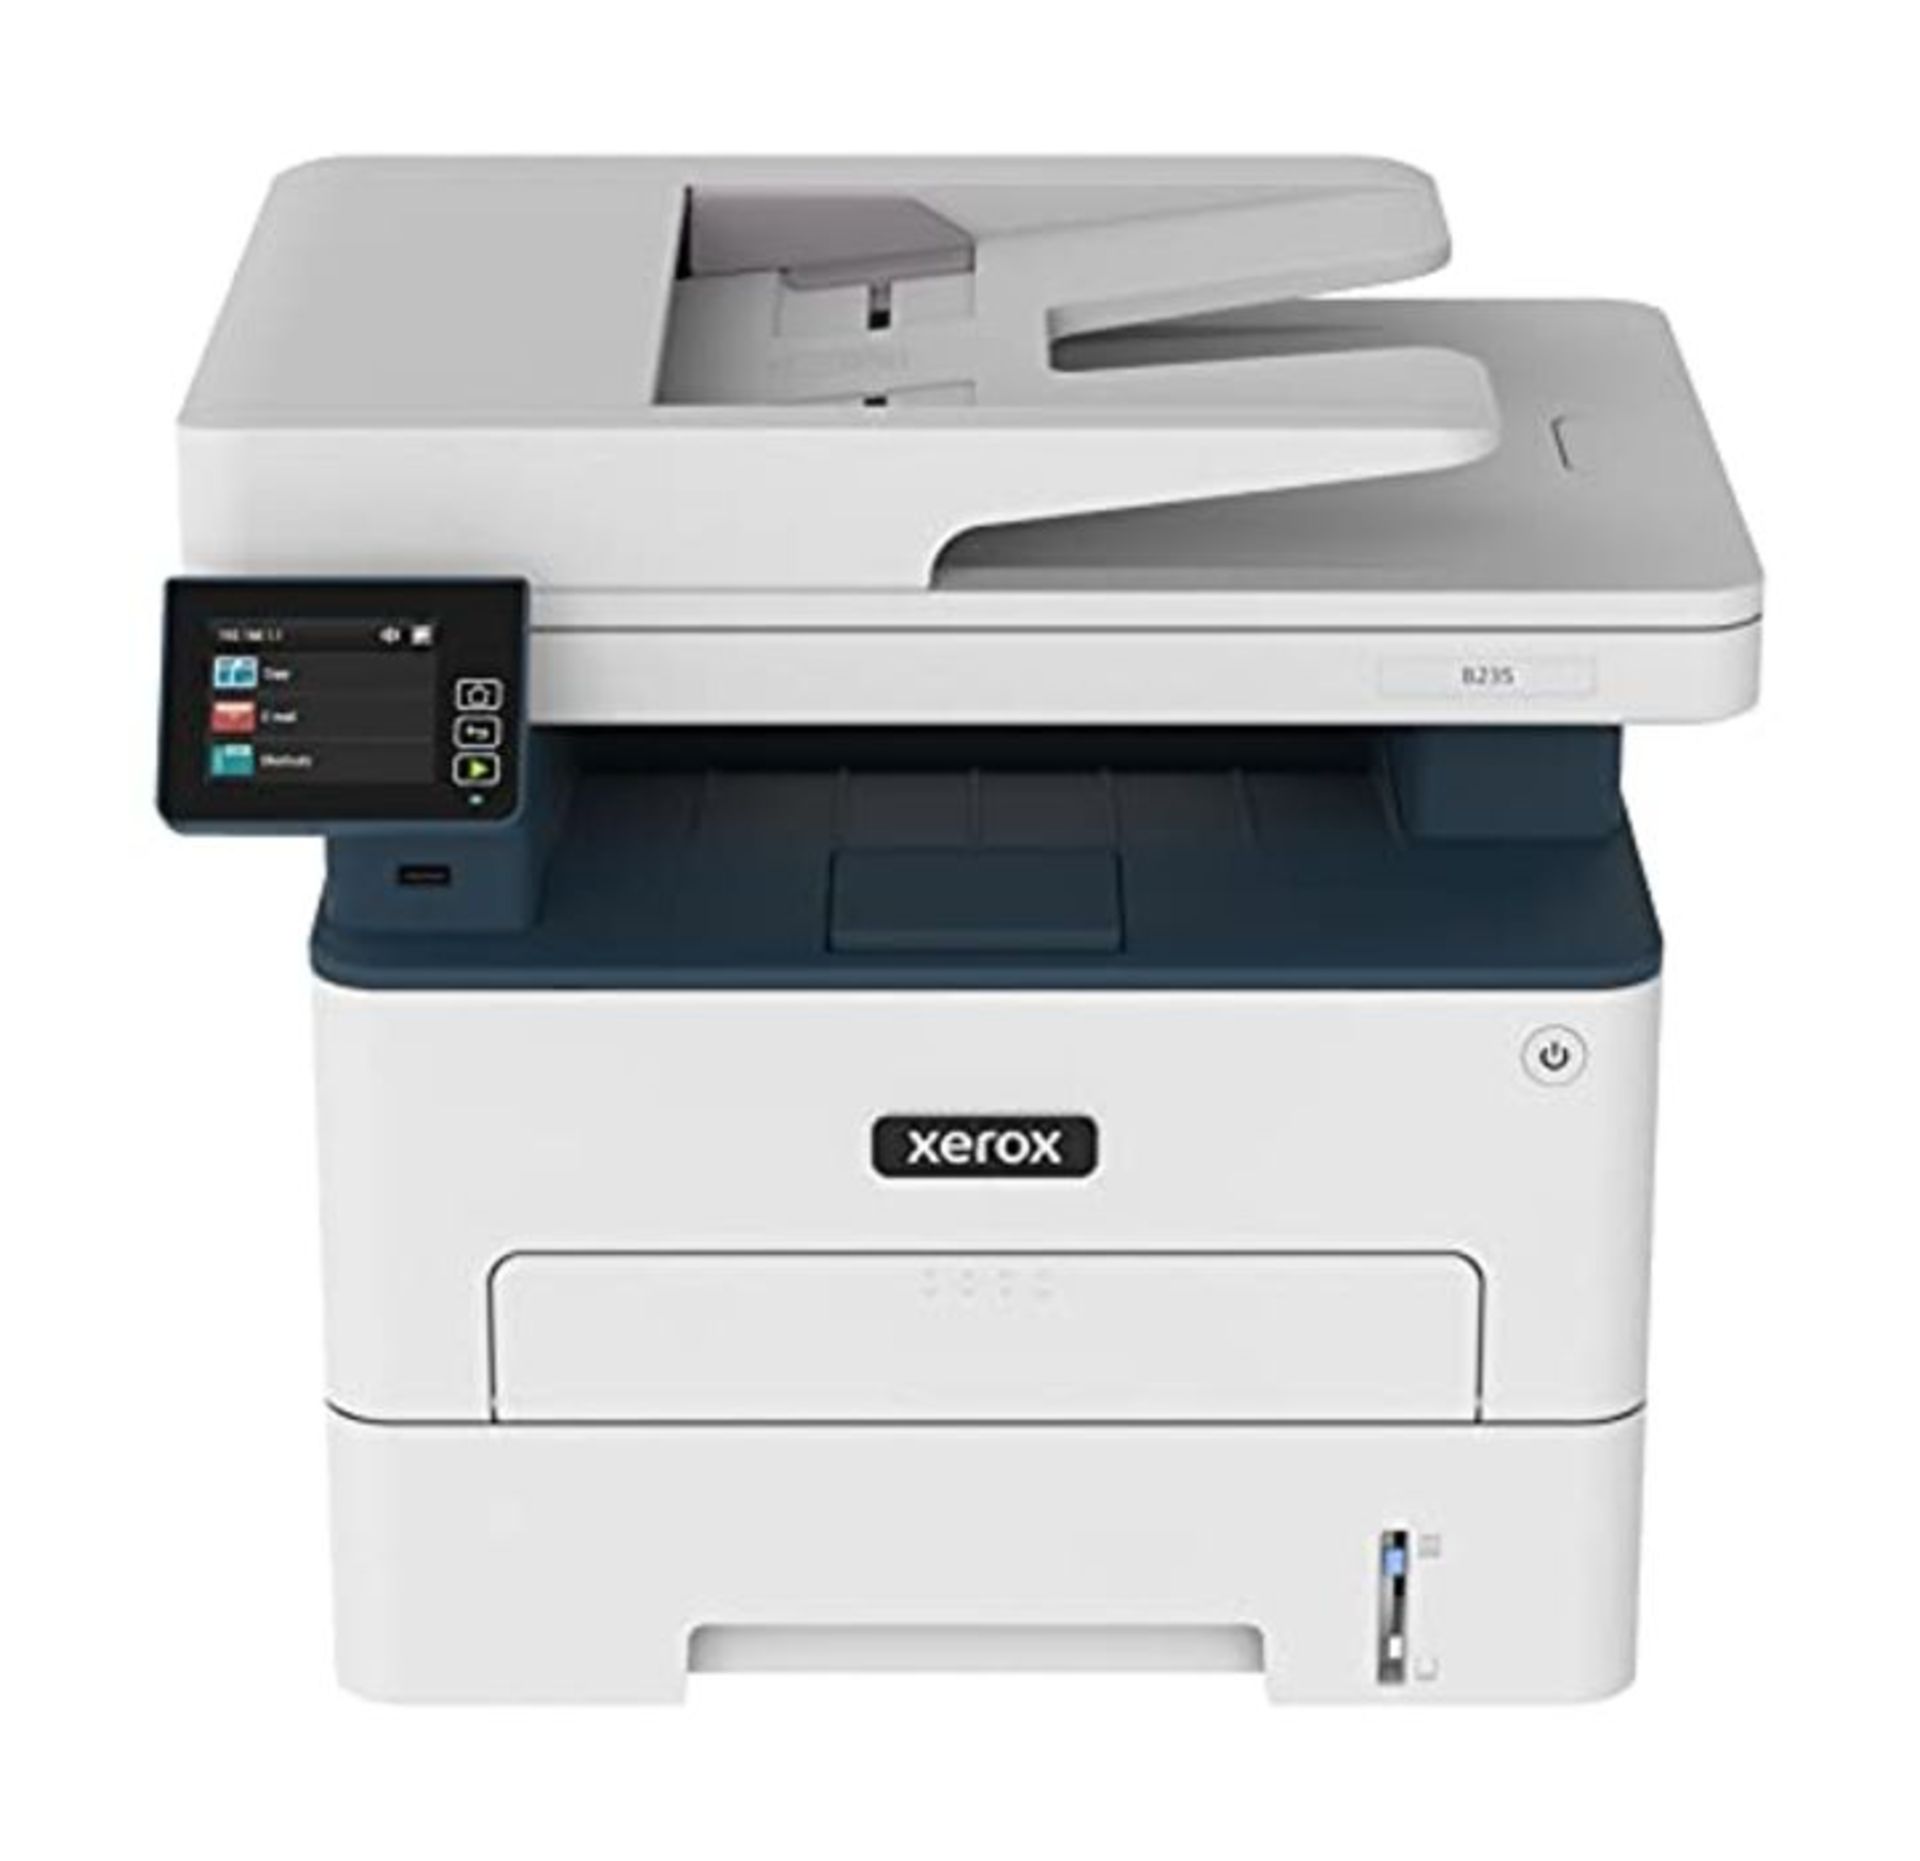 RRP £234.00 Xerox B235 Multifunzione Laser A4 - Copia/Stampa/Scansione/Fax, 34ppm, Bianco e Nero,